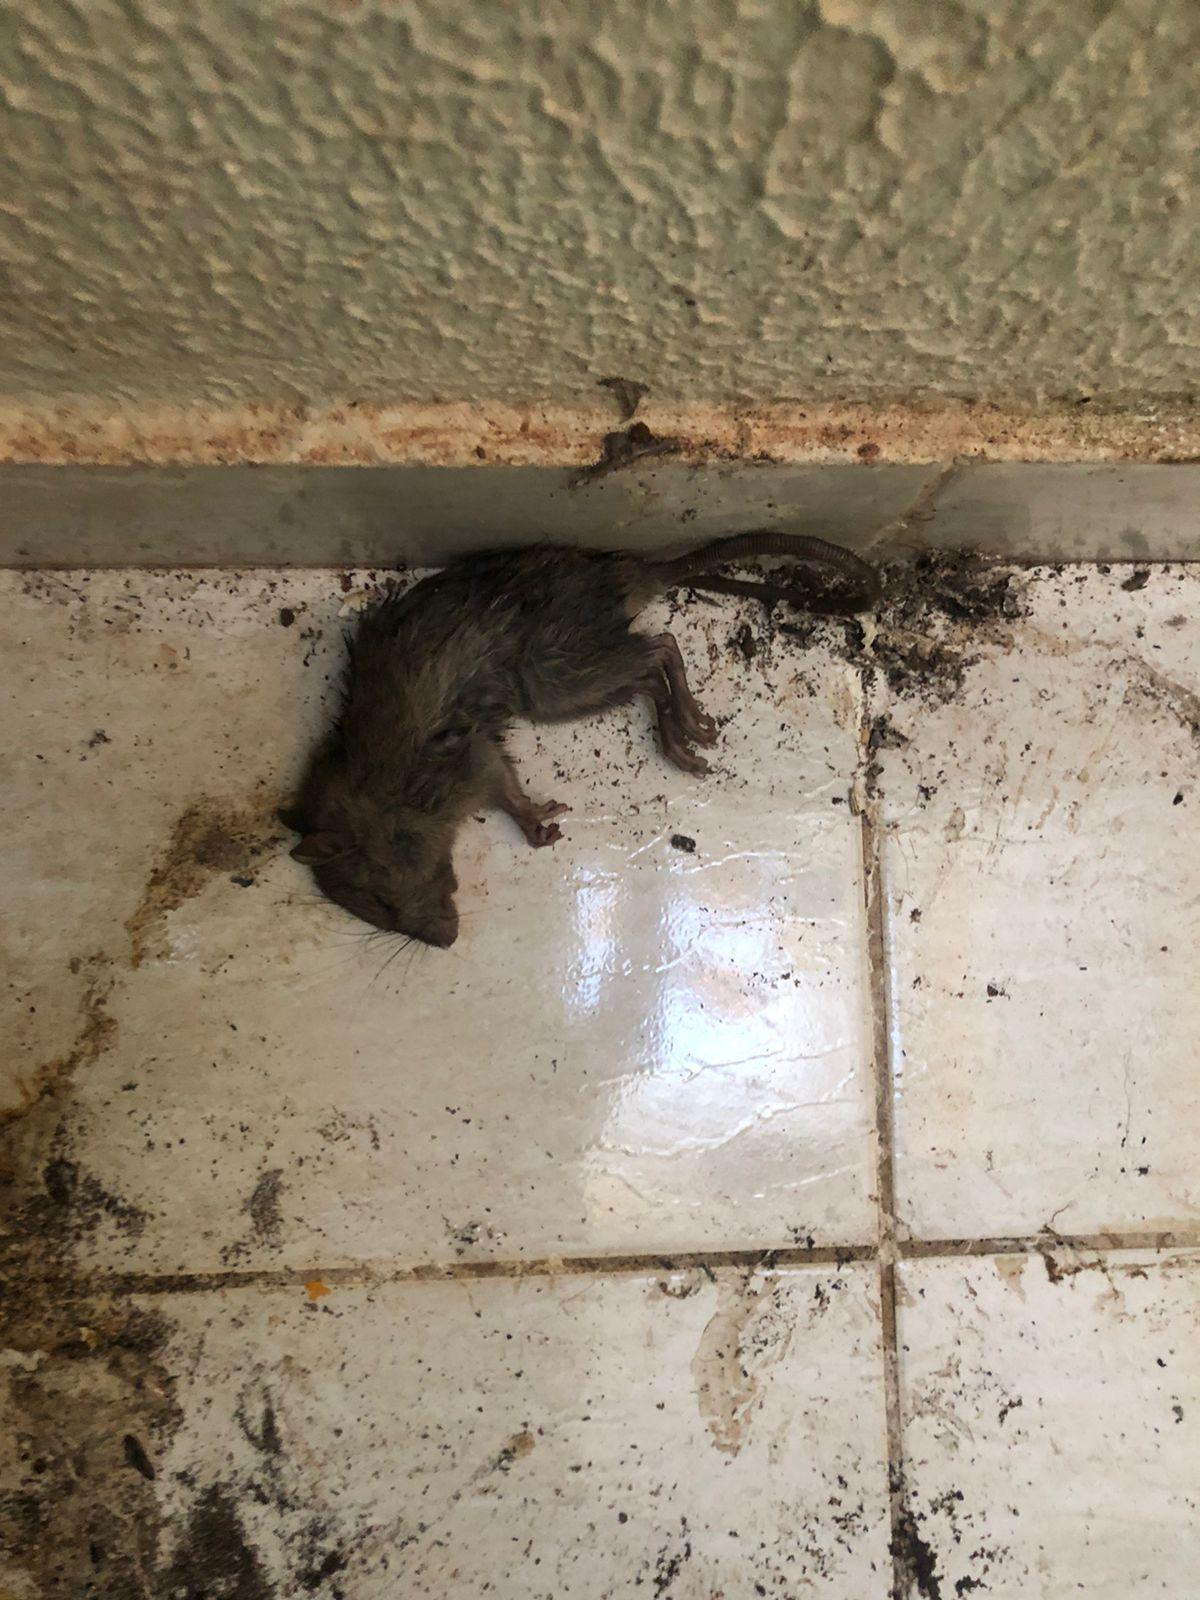 “Estamos tendo diversos problemas com essa casa, já que nossas residências ao lado estão sendo invadidas por bichos peçonhentos, ratos, pernilongos e o mosquito da dengue”, relatou o denunciante. (Foto/Denunciante)